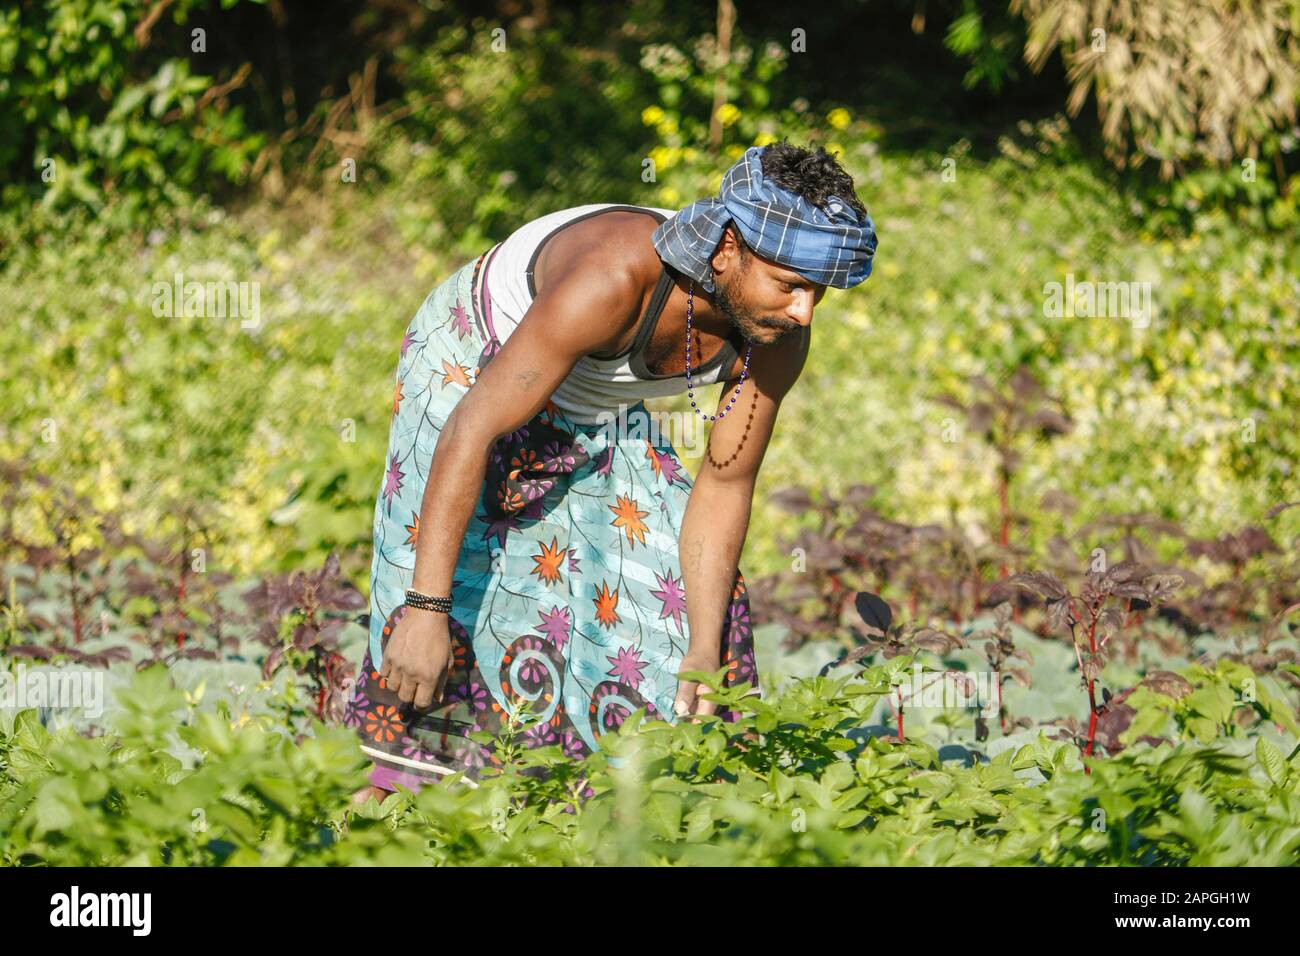 El granjero indio que cuida para el cultivo potato.Farmer extirpa la hierba en el jardín de la patata. Foto de stock